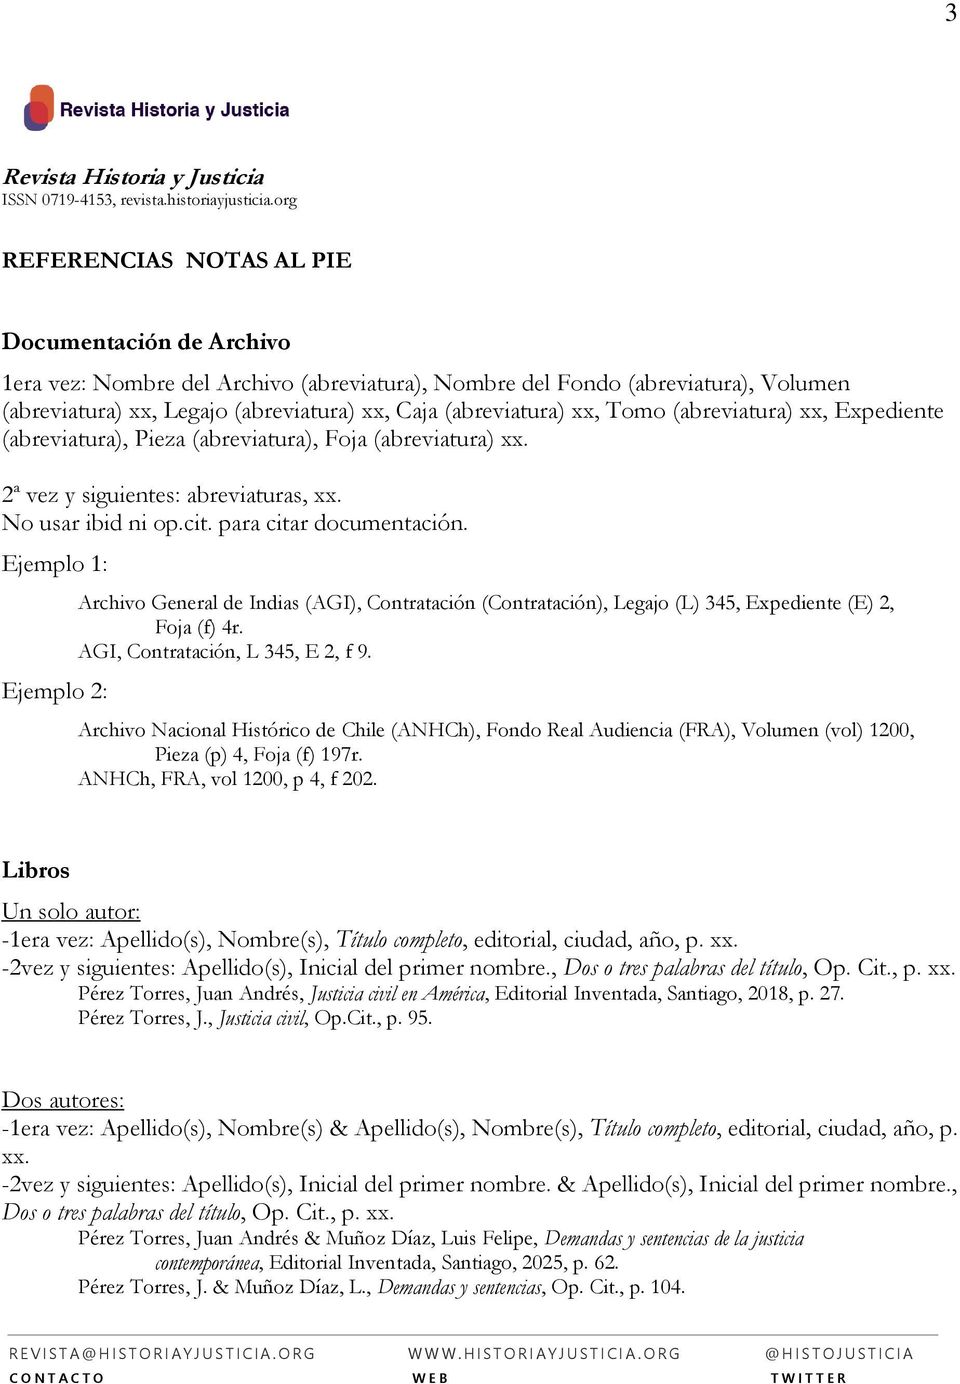 Ejemplo 1: Ejemplo 2: Archivo General de Indias (AGI), Contratación (Contratación), Legajo (L) 345, Expediente (E) 2, Foja (f) 4r. AGI, Contratación, L 345, E 2, f 9.